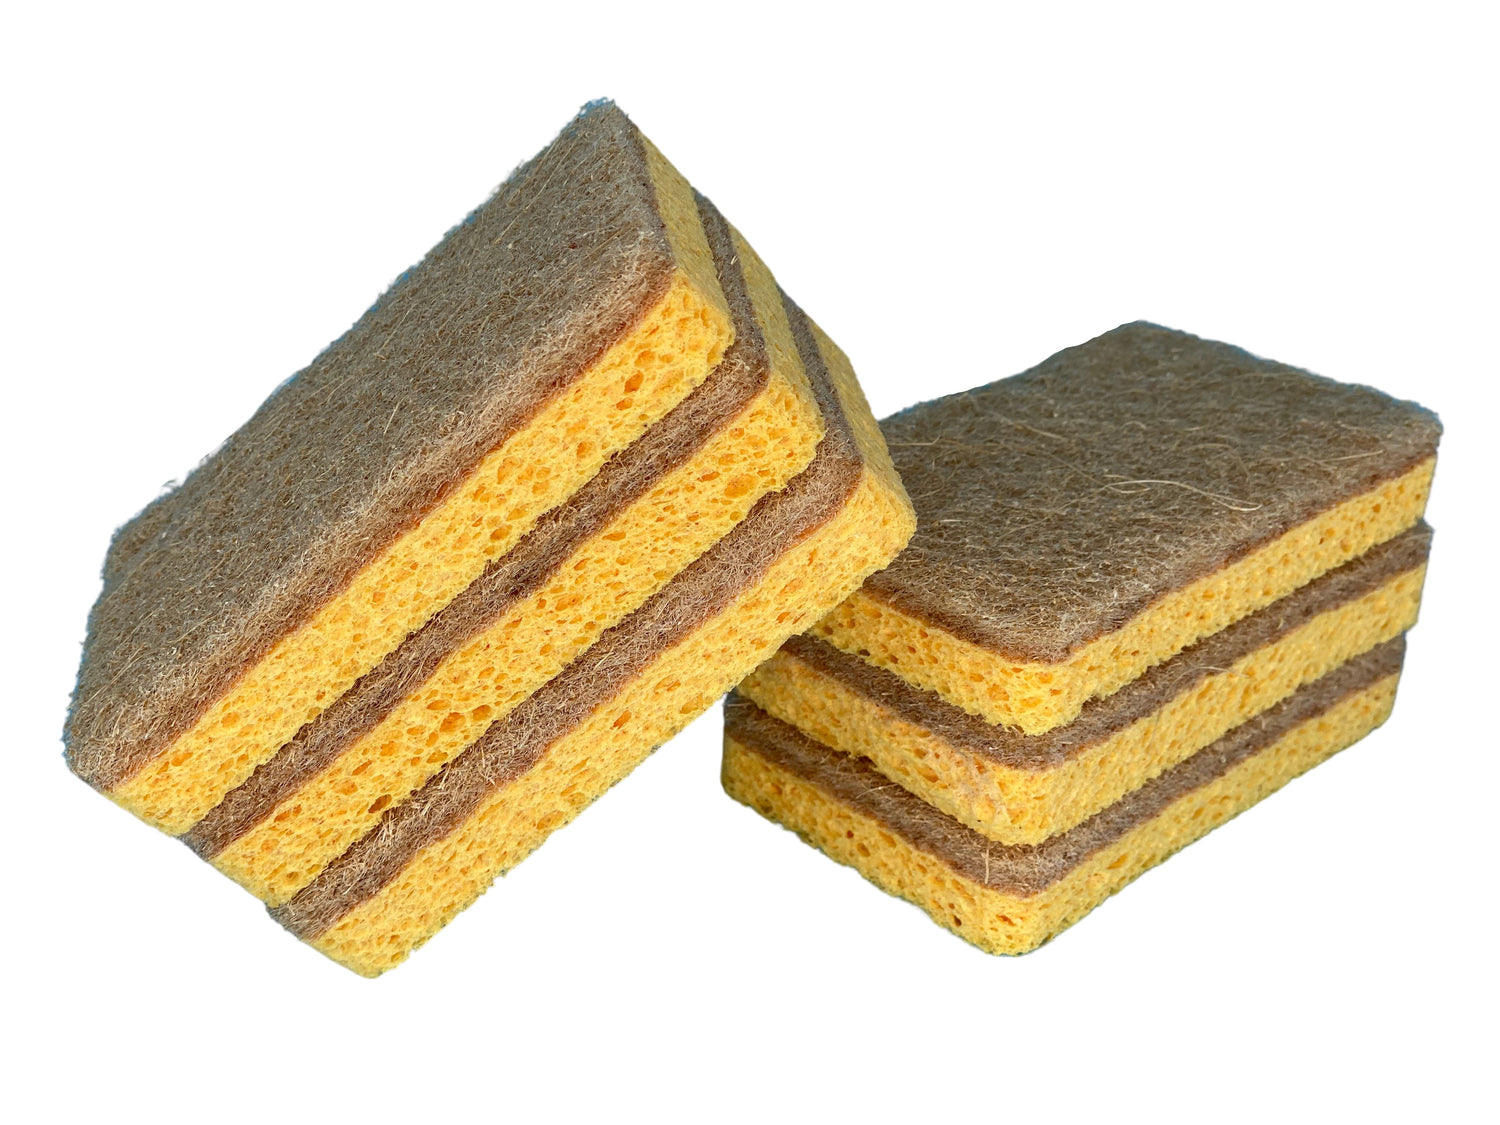 Kitchen sponges